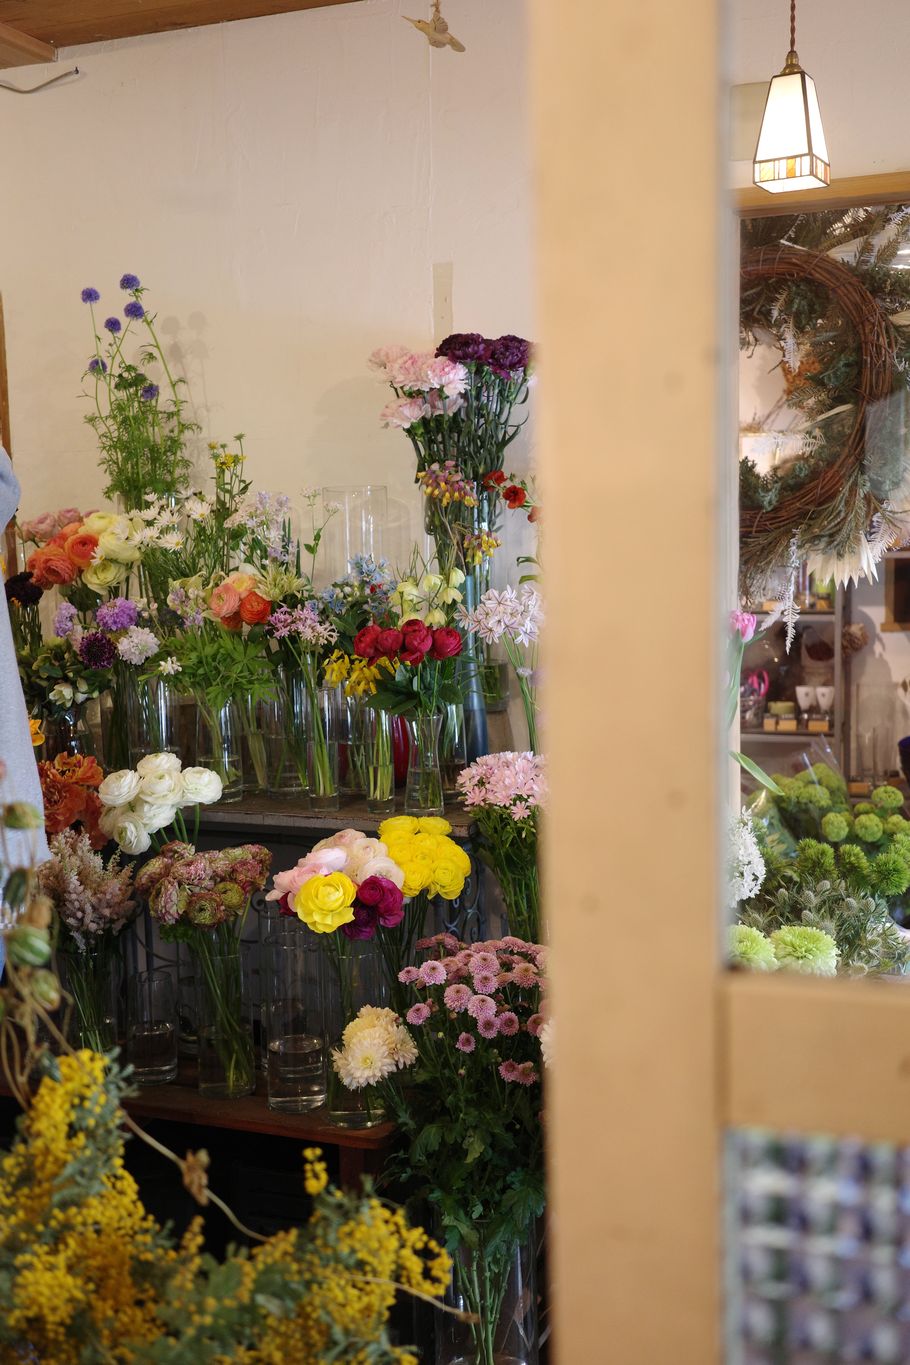 花屋とカフェ、別々だけど店名は同じ。江古田の癒し空間『ネコカヴリーノ』を取材、生命感あふれる花屋『ネコカヴリーノ』。選べる草花は30種類以上